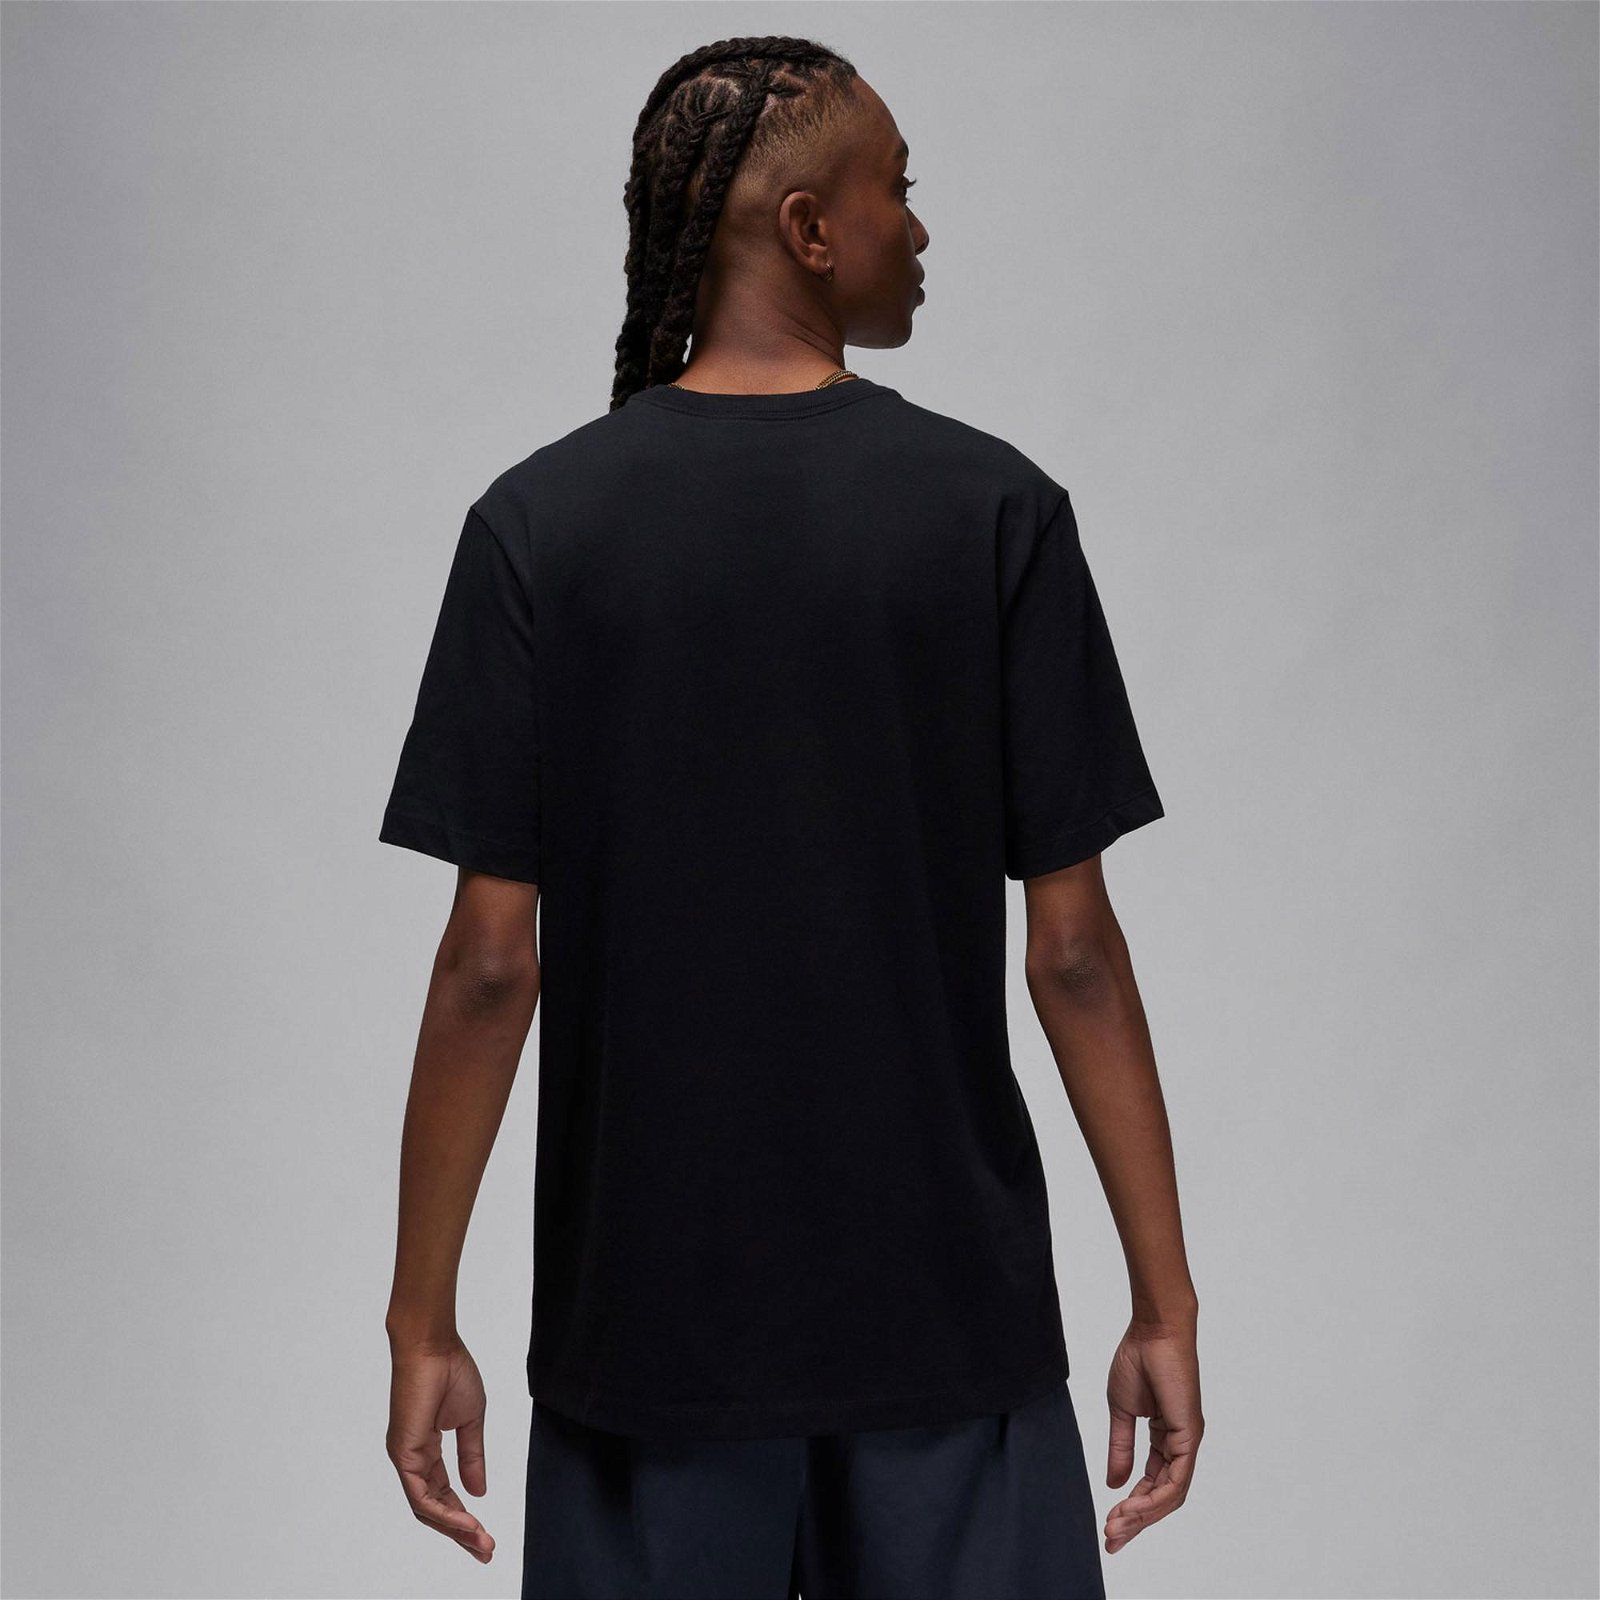 Jordan Brand Erkek Siyah T-Shirt